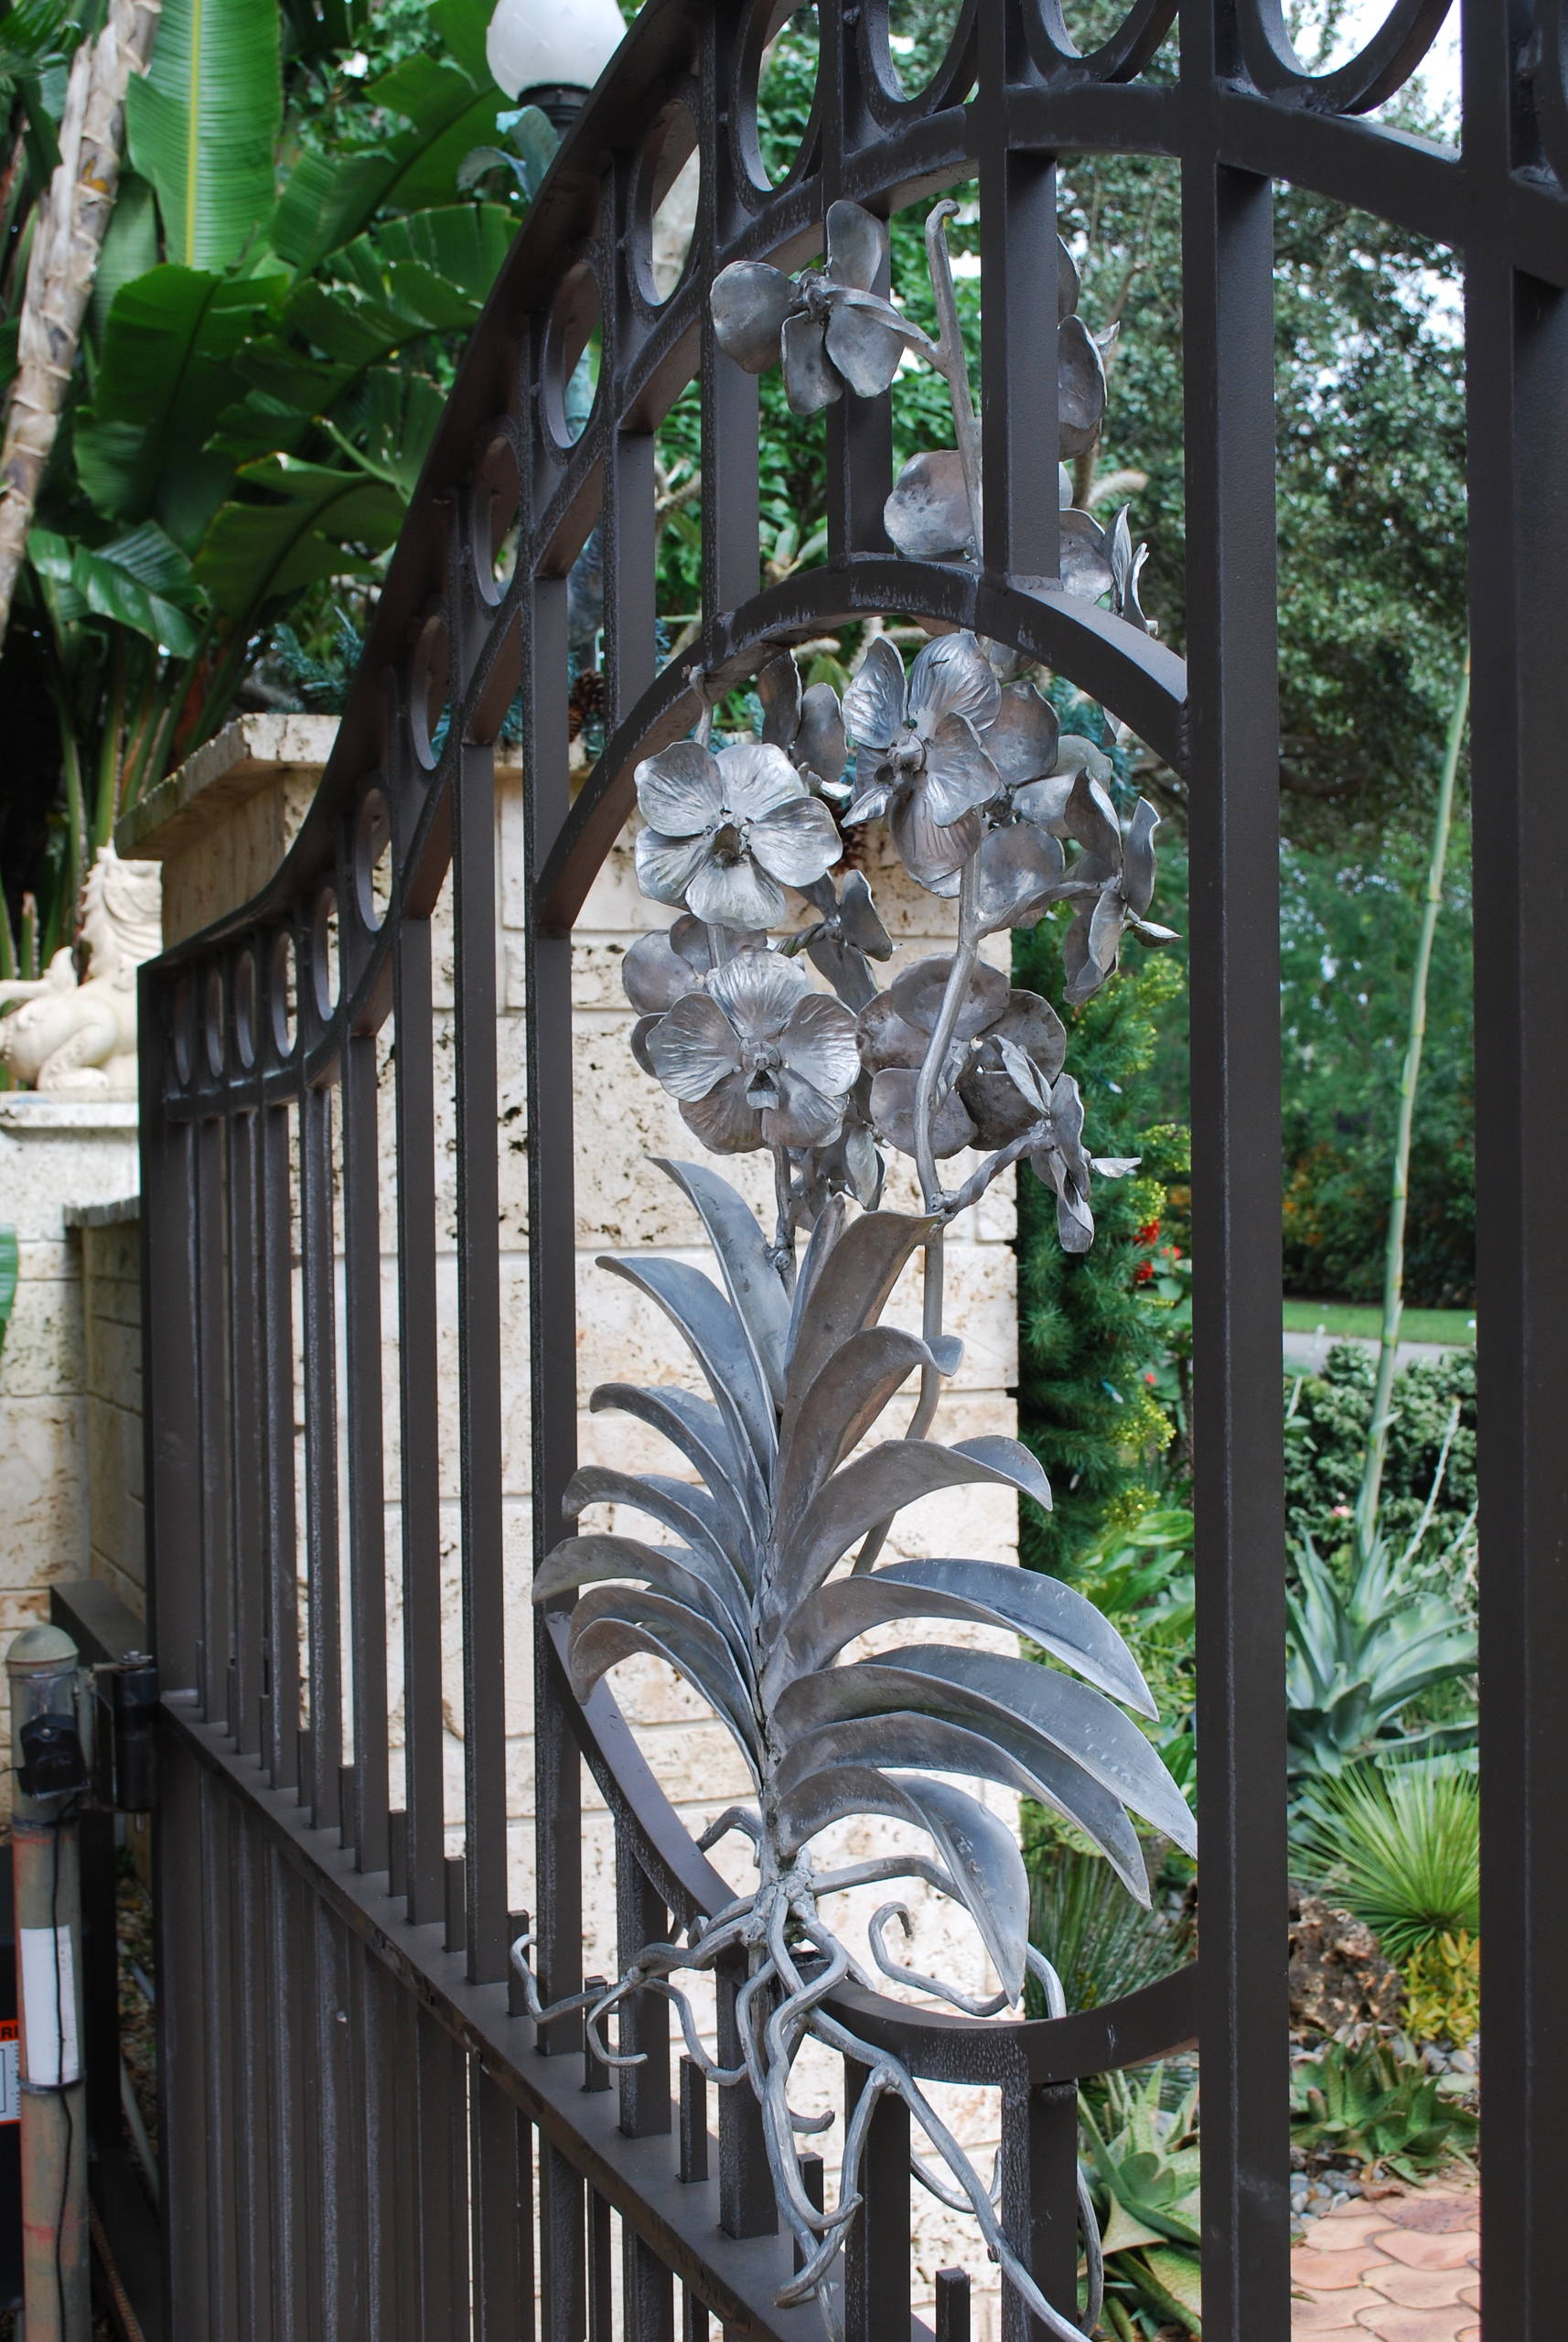 A vanda sculpture adorns the front gate